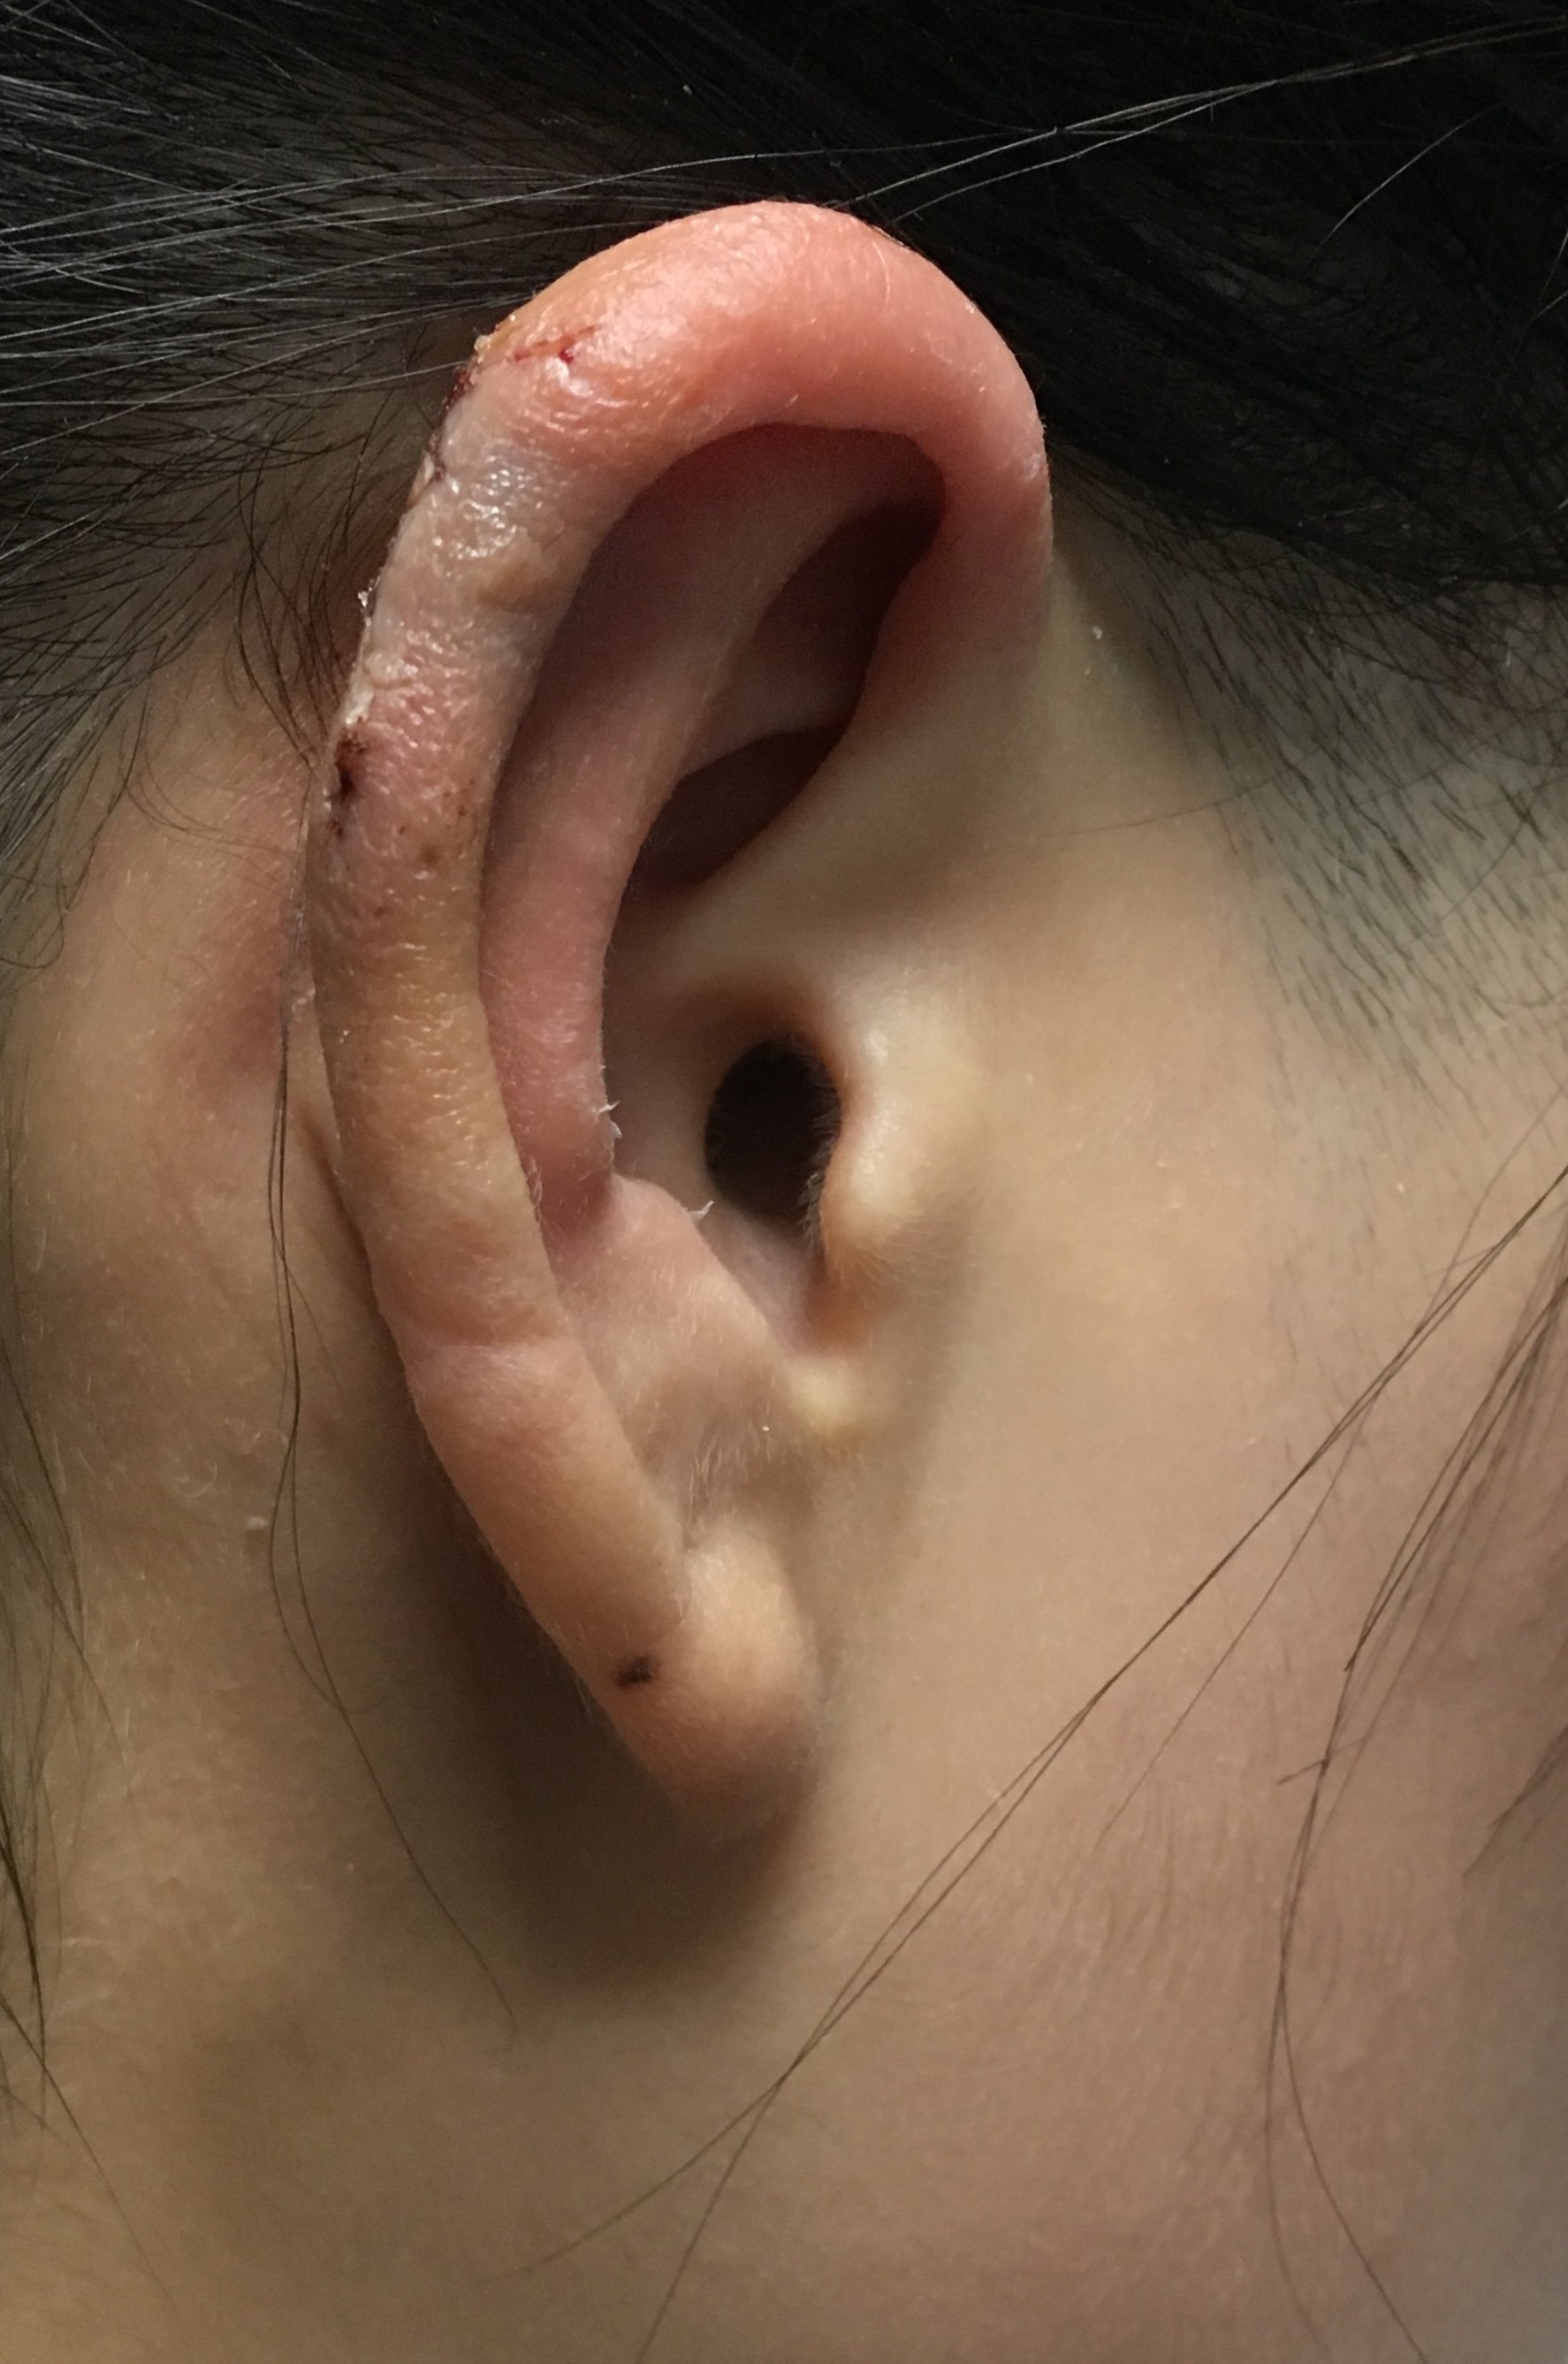 耳朵瘢痕疙瘩照片图片